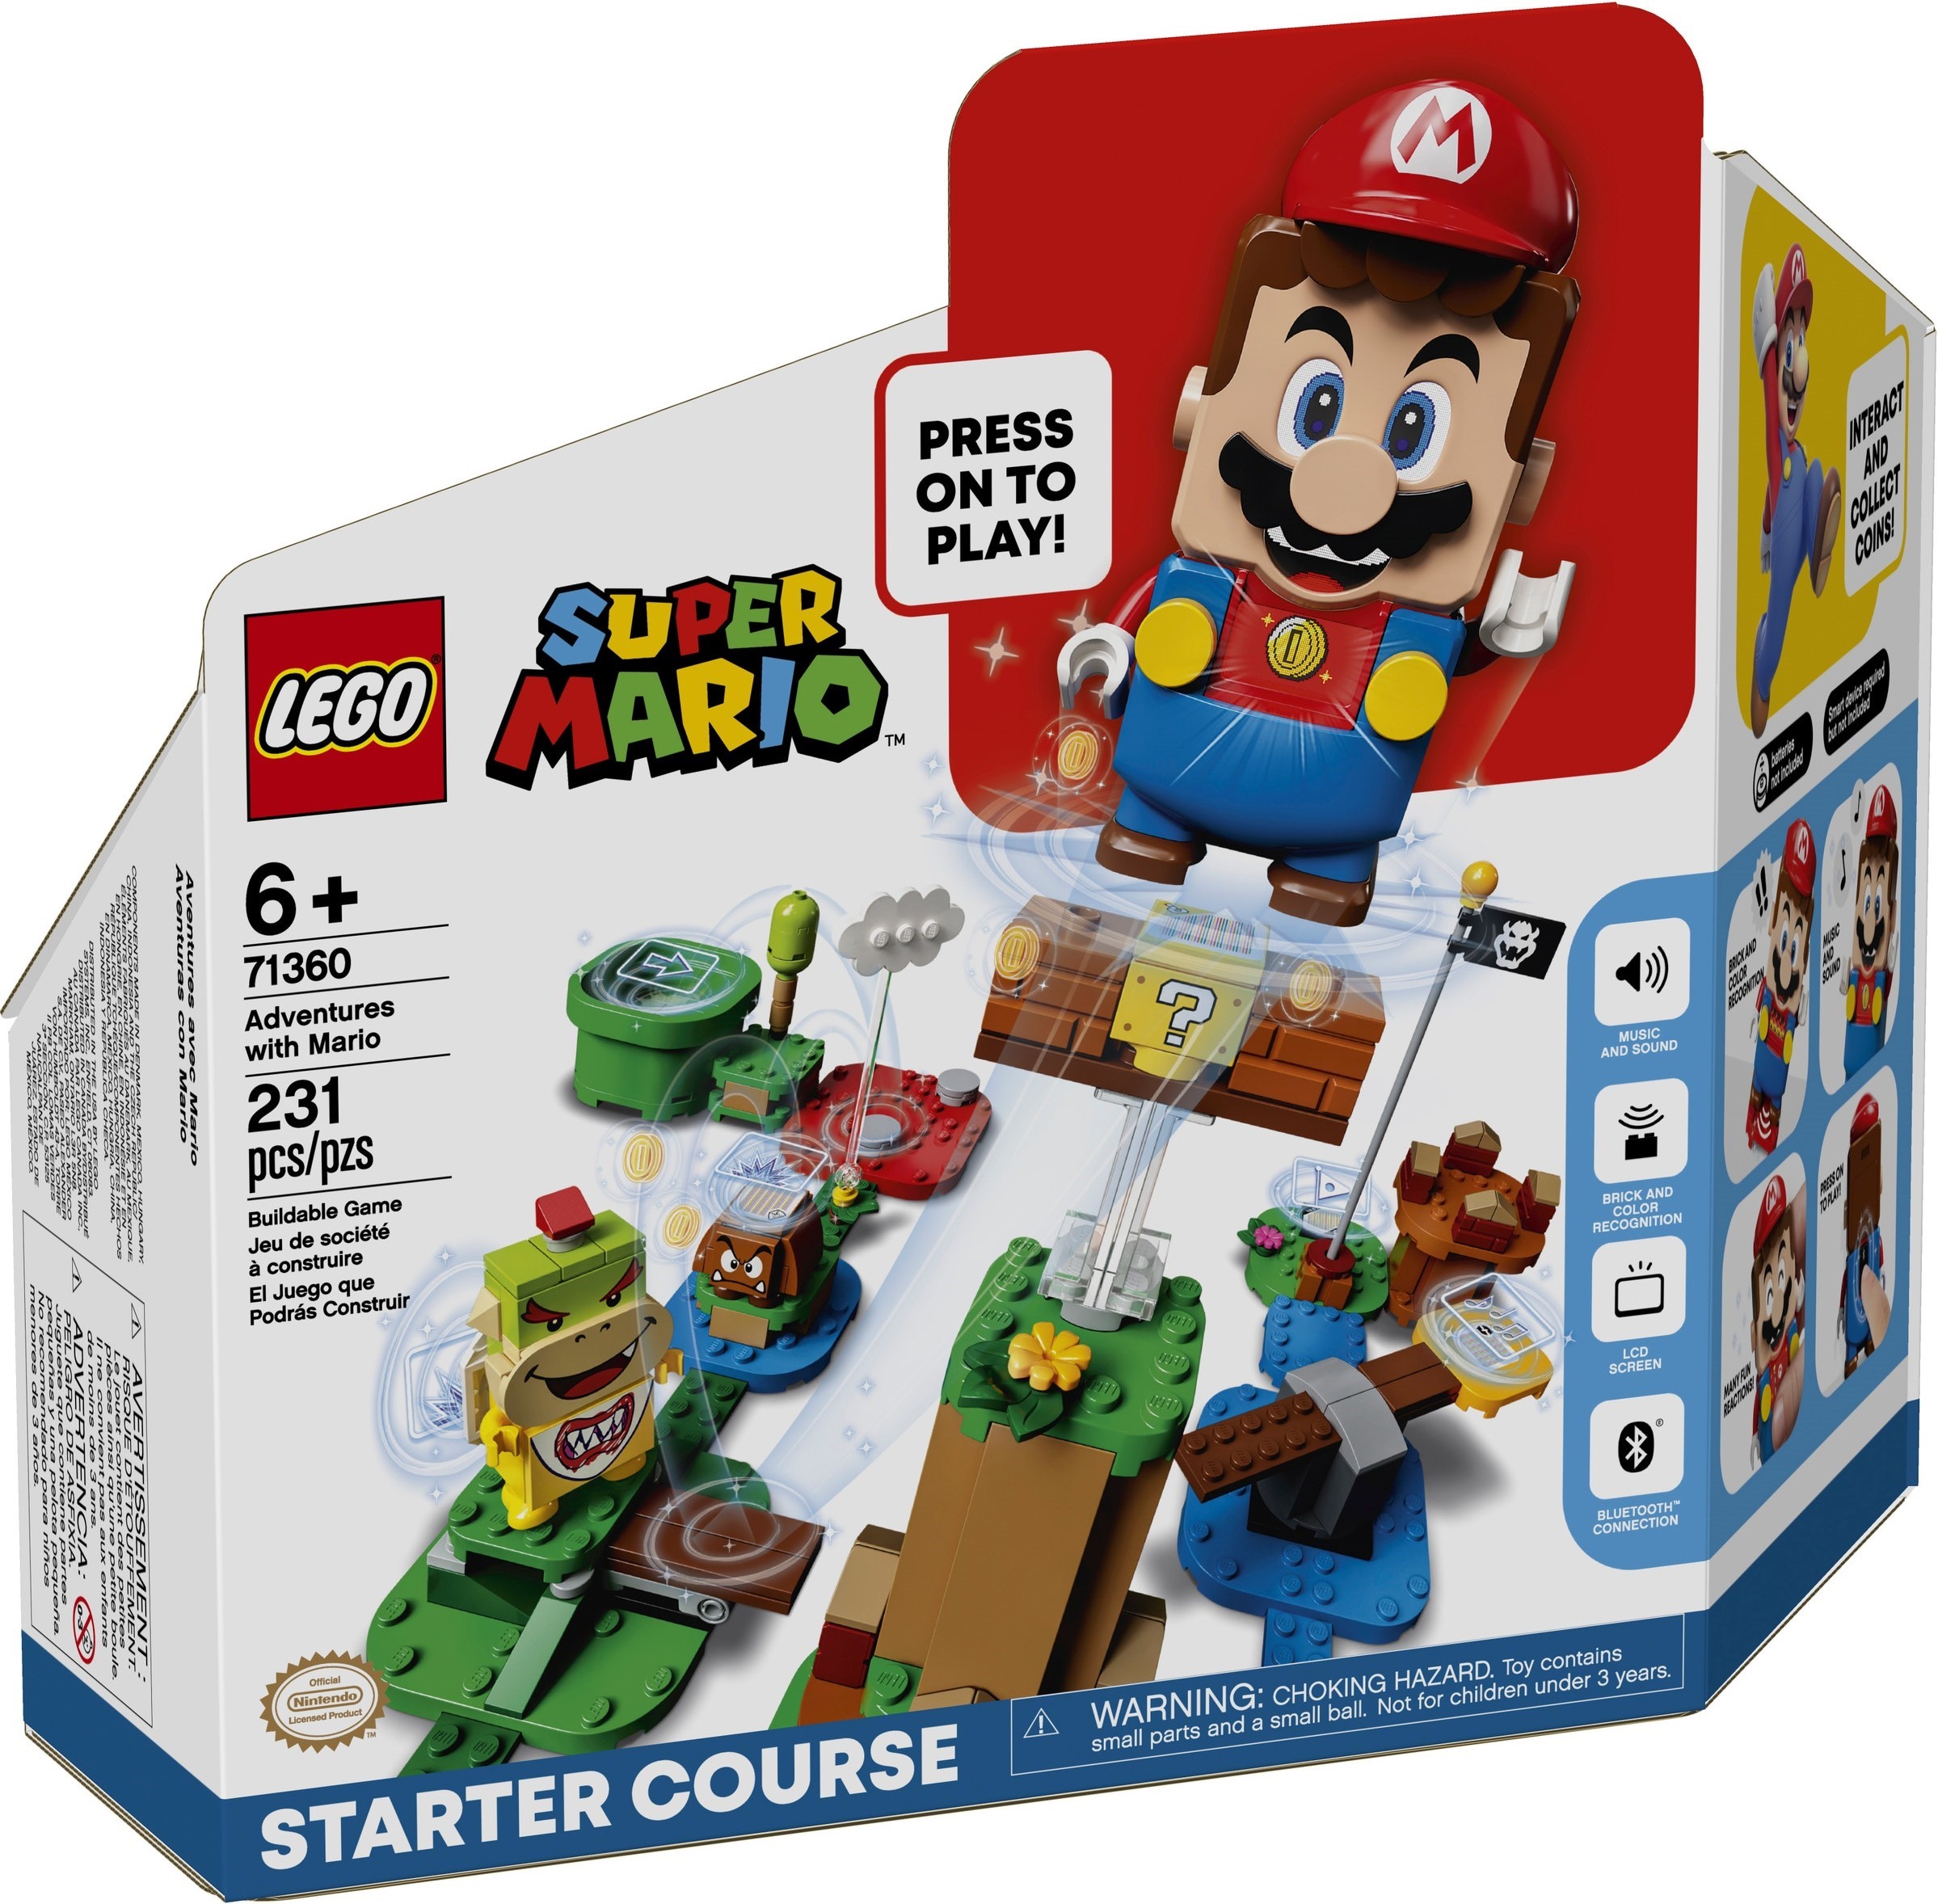 71360 LEGO Super Mario Adventures with Mario - Cuộc phiêu lưu cùng Mario